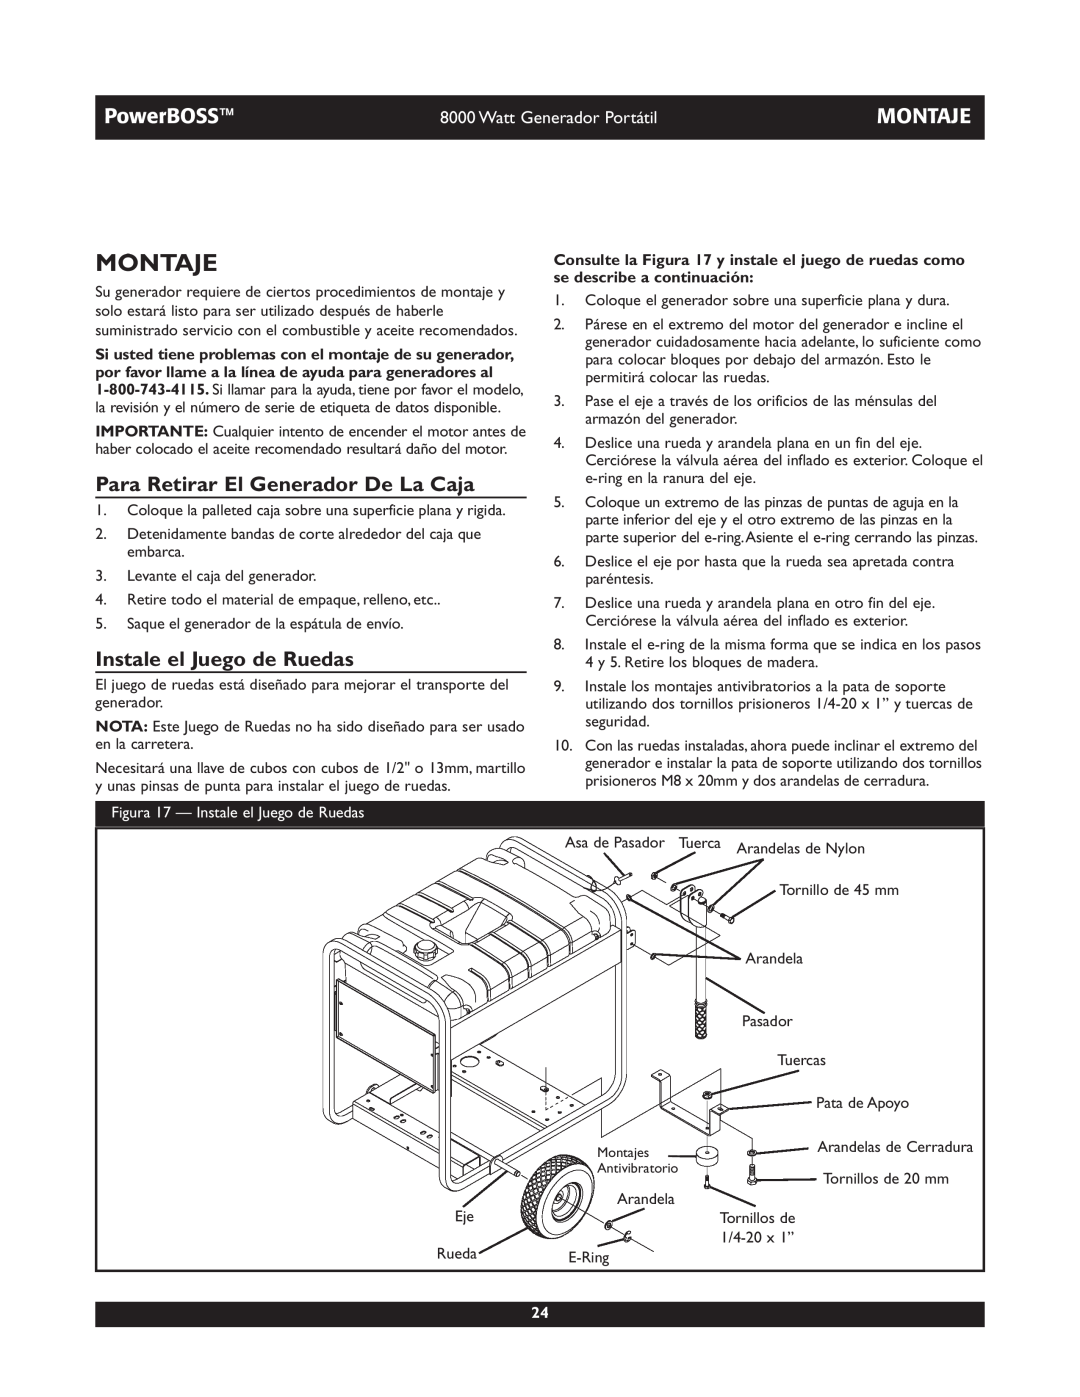 Briggs & Stratton 30228 owner manual Montaje, Para Retirar El Generador De La Caja, Instale el Juego de Ruedas, PowerBOSS 